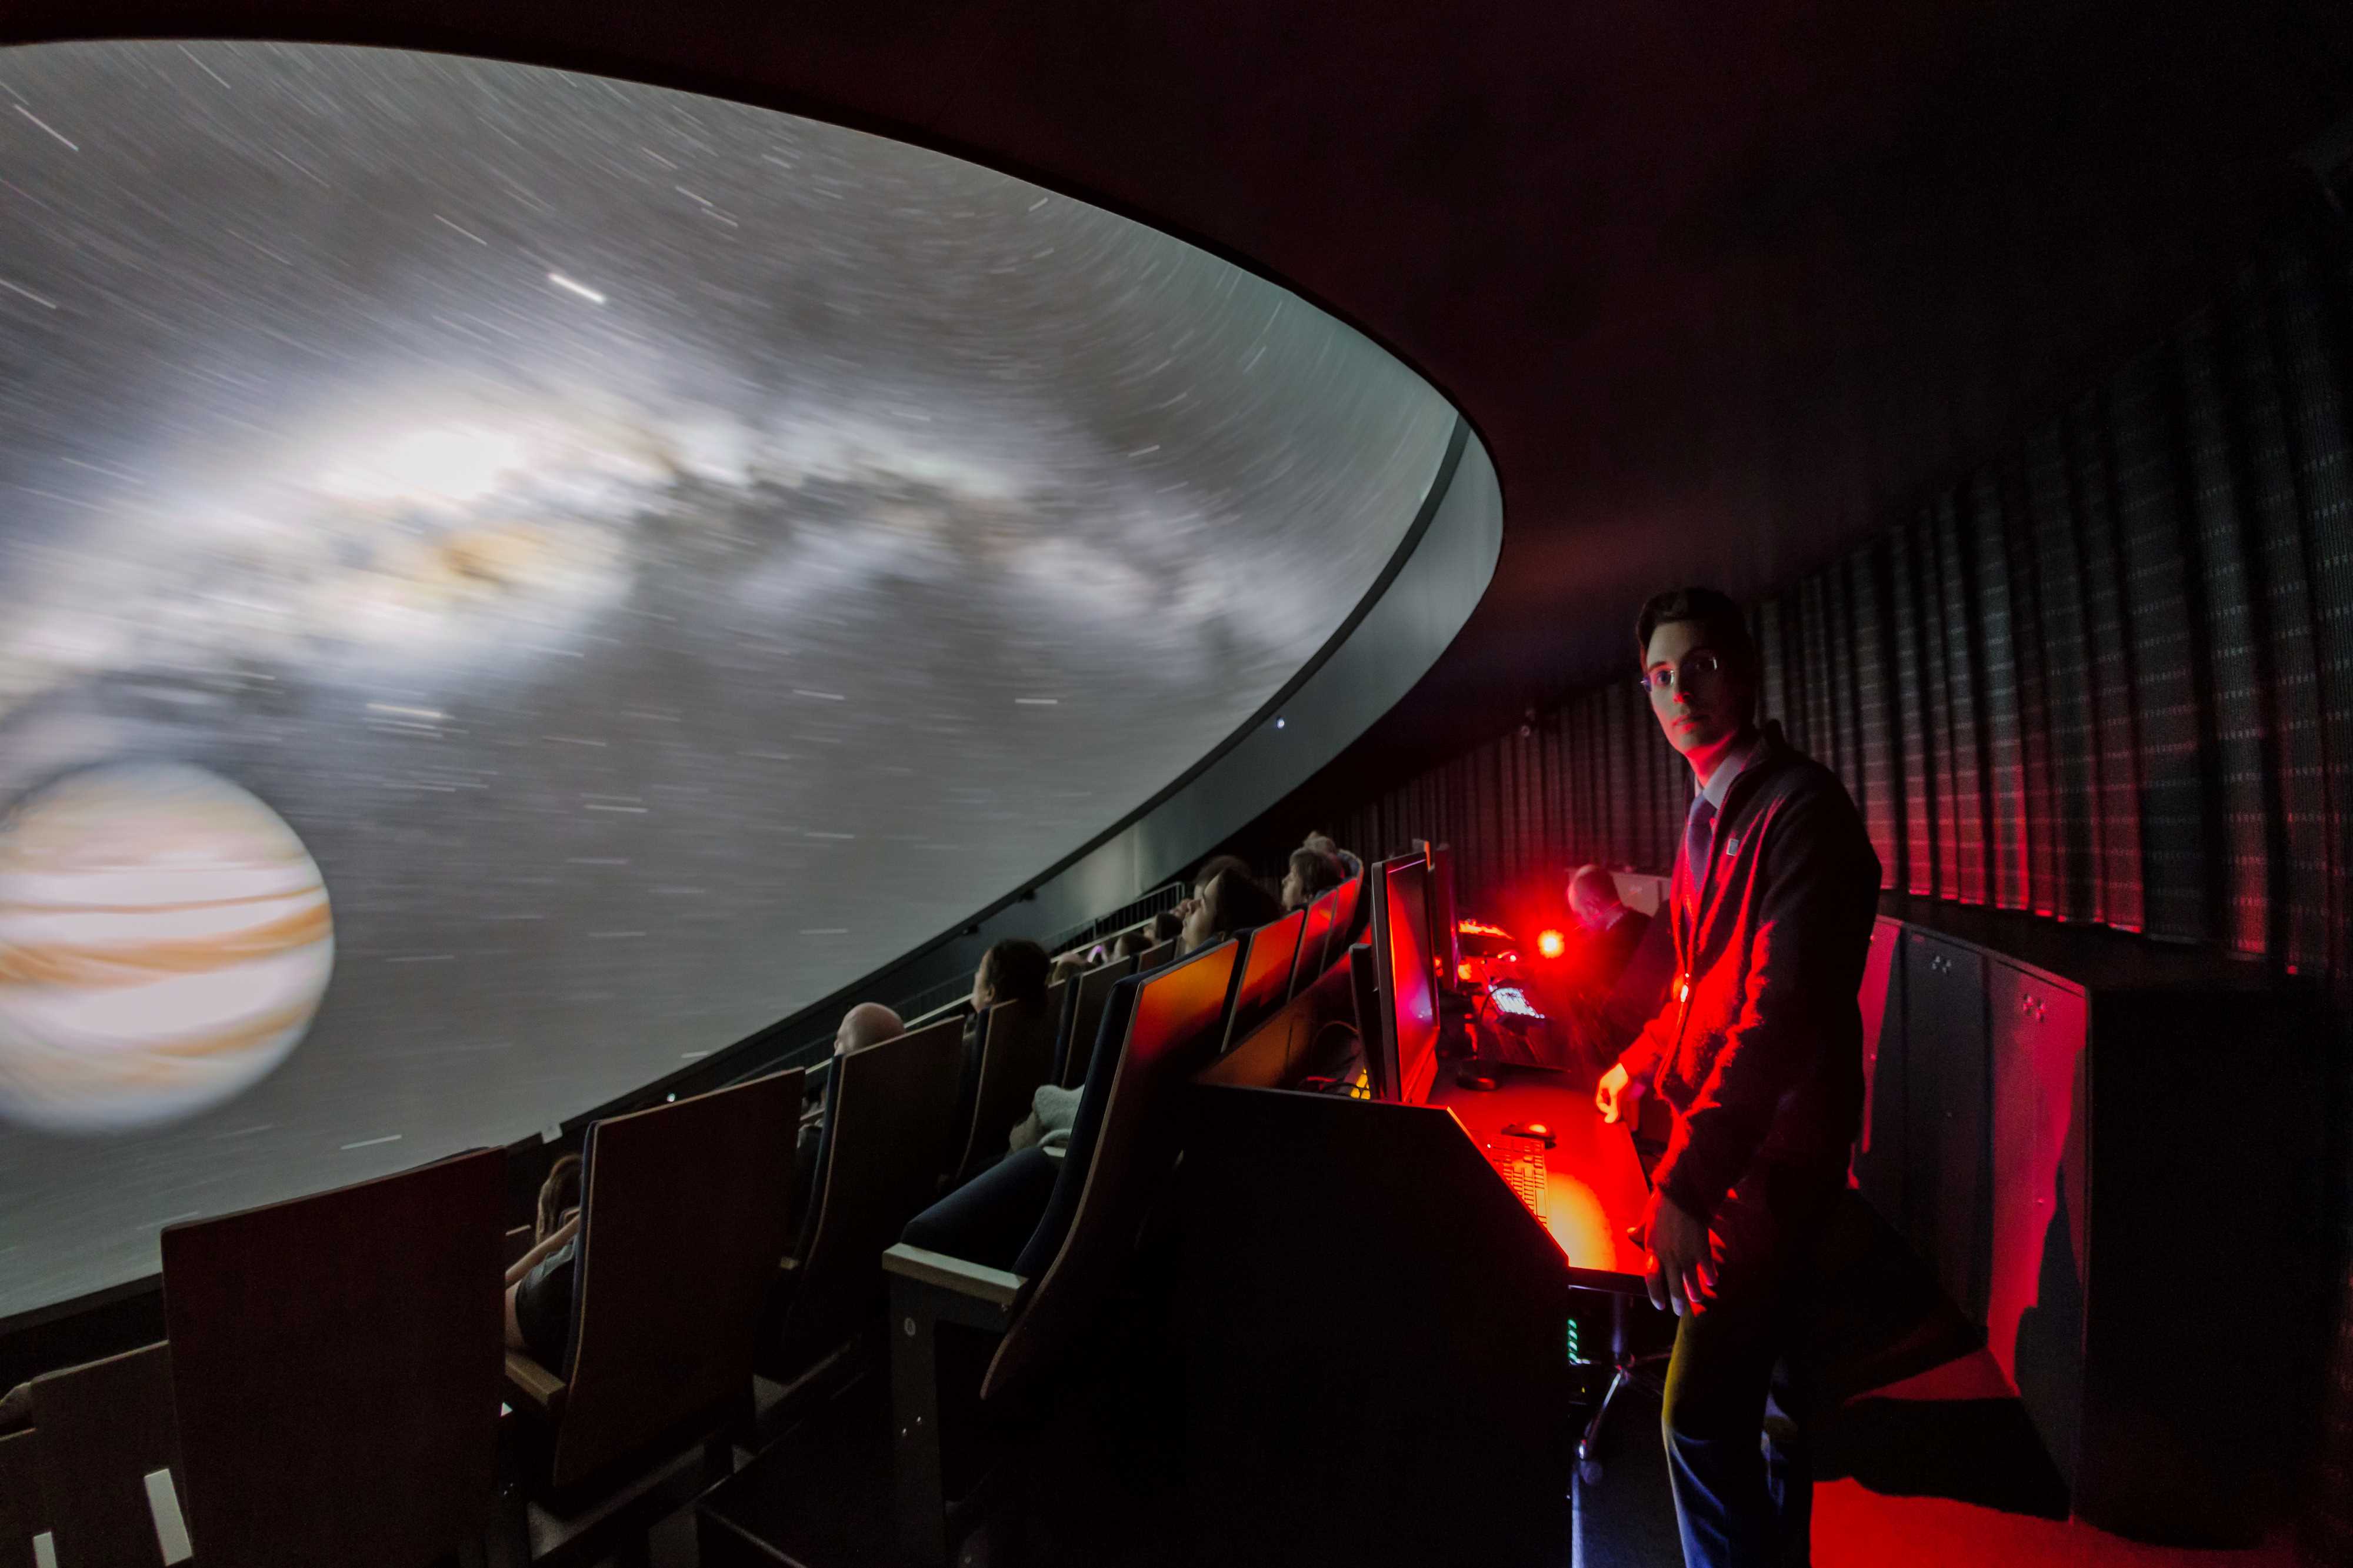 Έλληνας αστροφωτογράφος και ντοκιμαντερίστας ταξιδεύει και βιντεοσκοπεί το σύμπαν μέσα απ' τα μεγάλα τηλεσκόπια της Γής